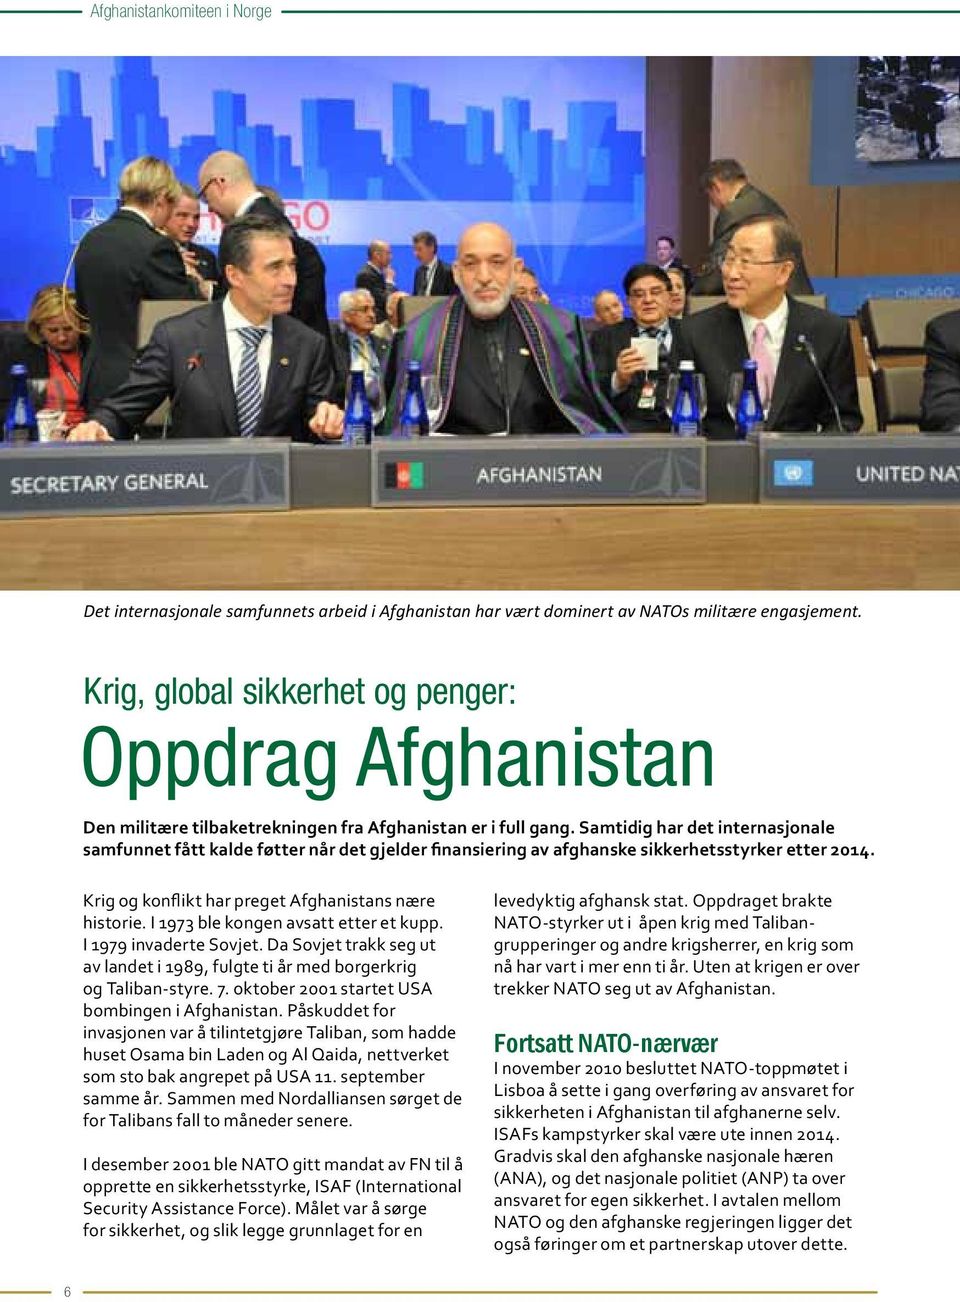 Samtidig har det internasjonale samfunnet fått kalde føtter når det gjelder finansiering av afghanske sikkerhetsstyrker etter 2014. Krig og konflikt har preget Afghanistans nære historie.